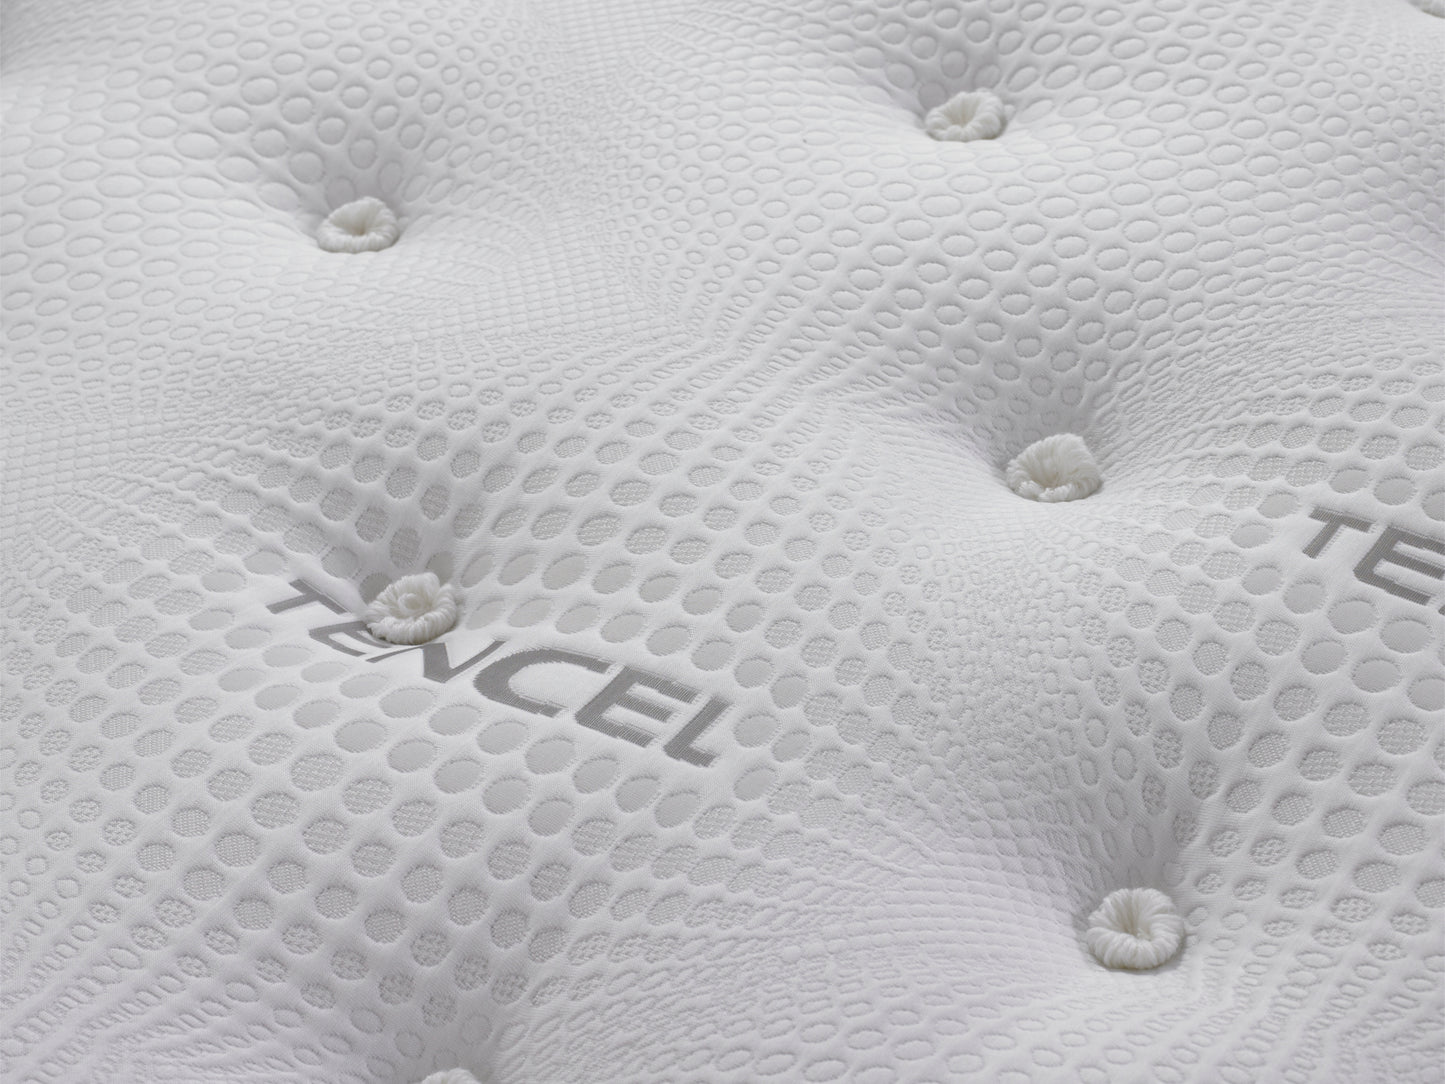 Tencel Pocket Sprung Luxury Mattress with Zero G Foam - Medium Tension